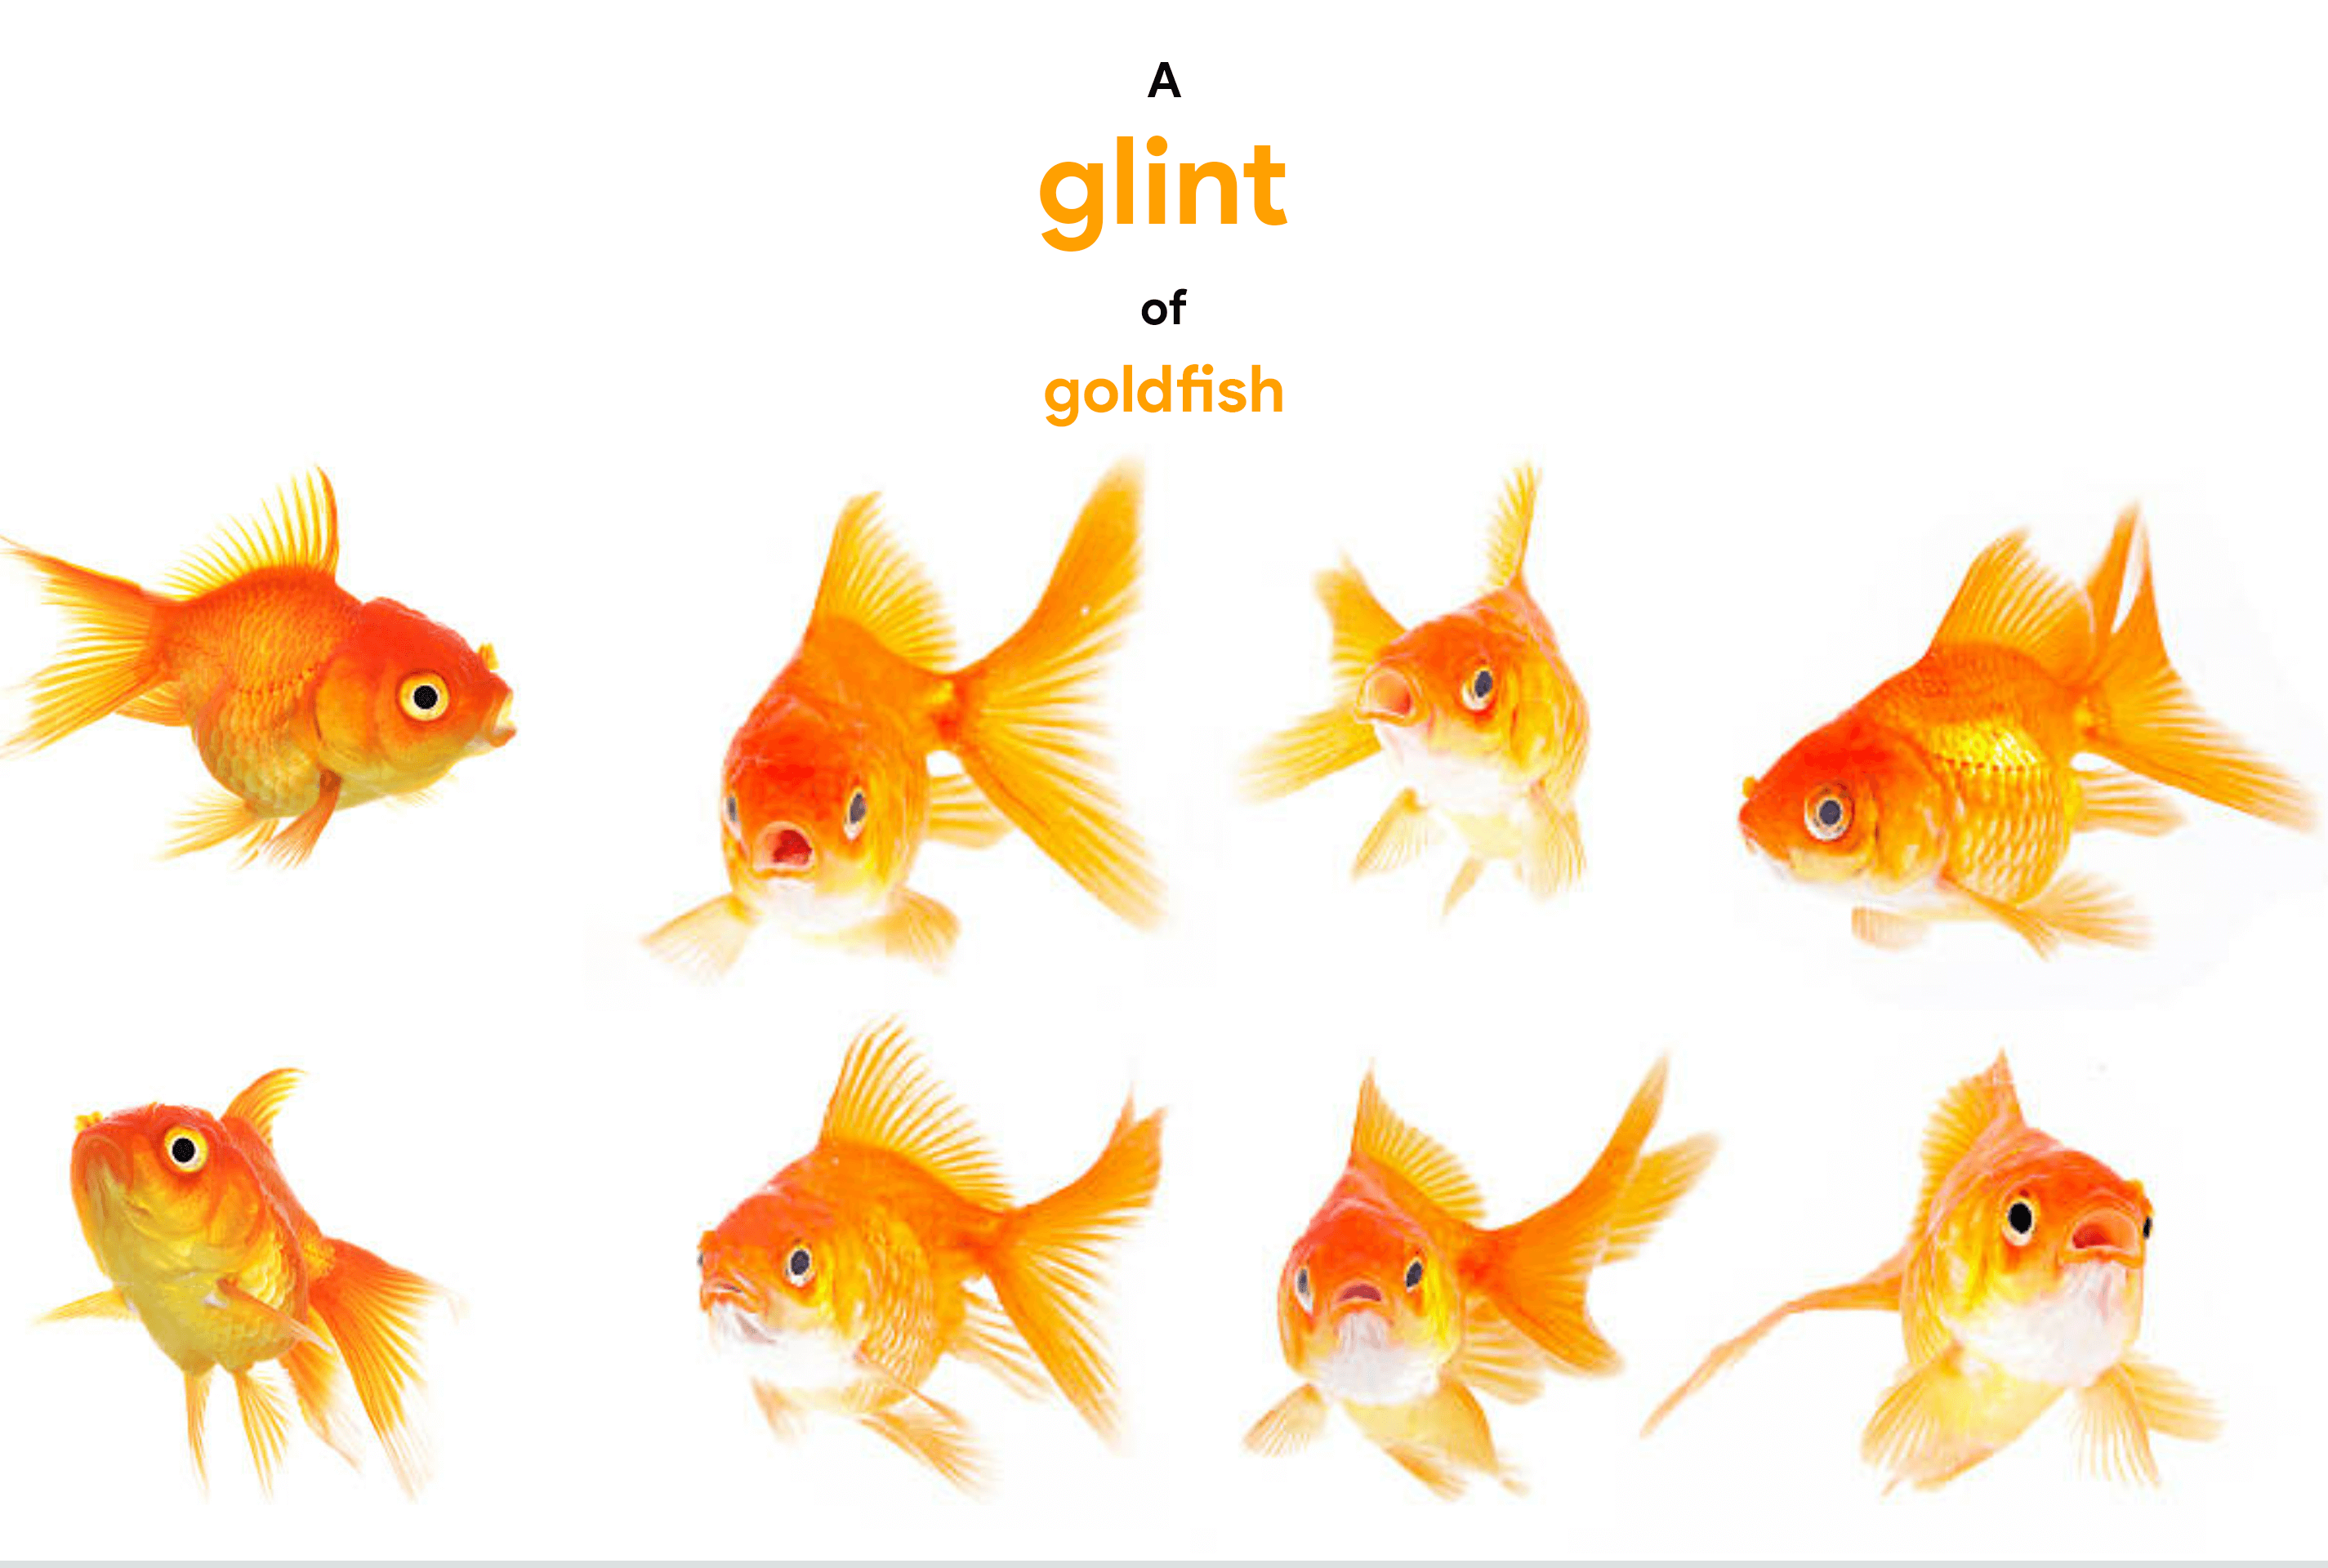 collective-noun-for-goldfish